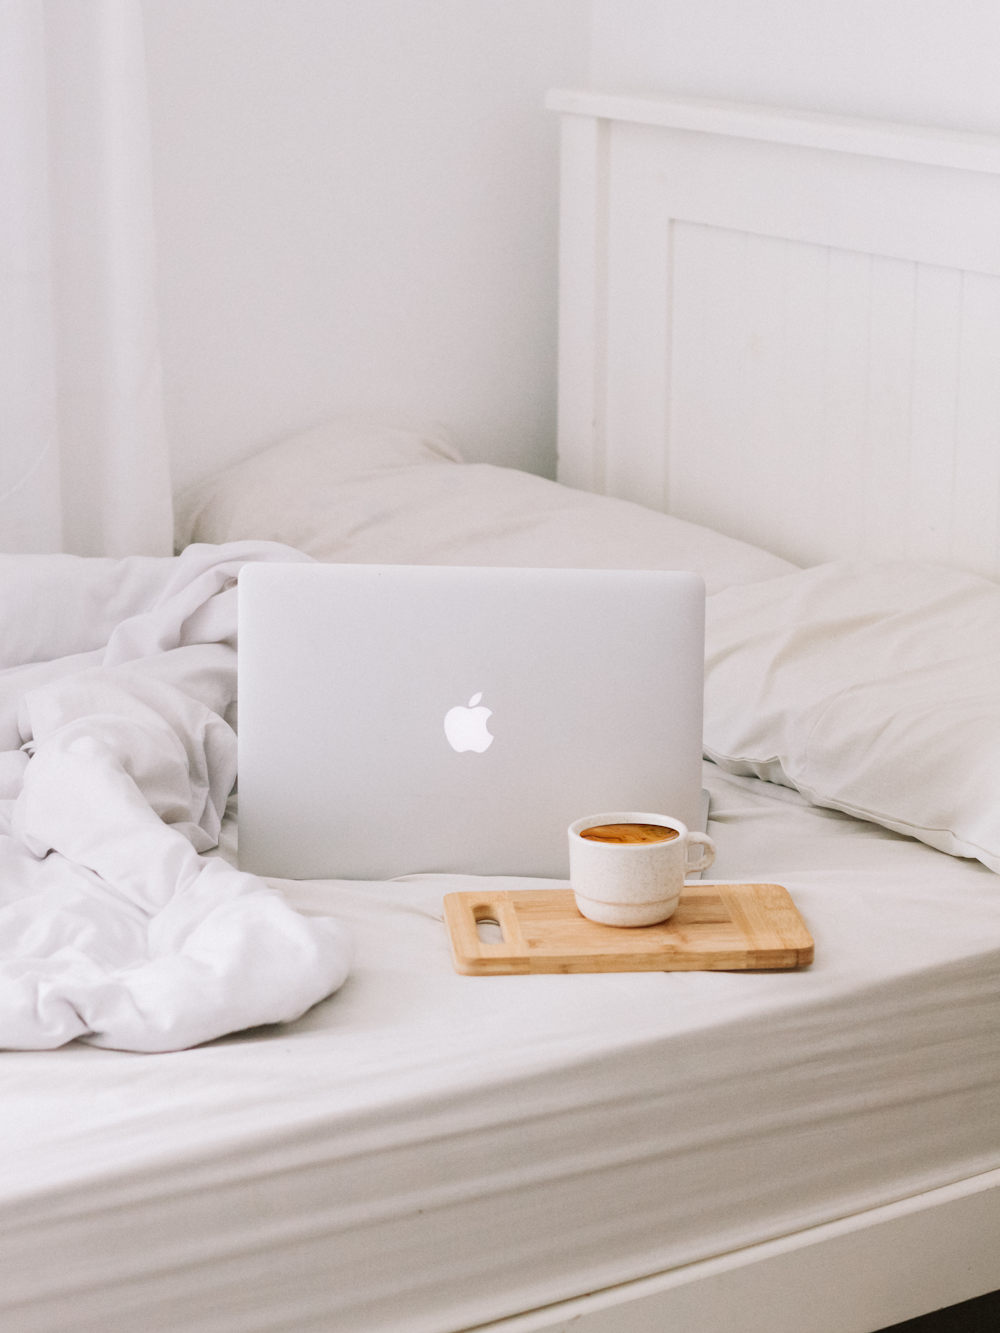 MacBook neben Teetasse mit Milchkaffee